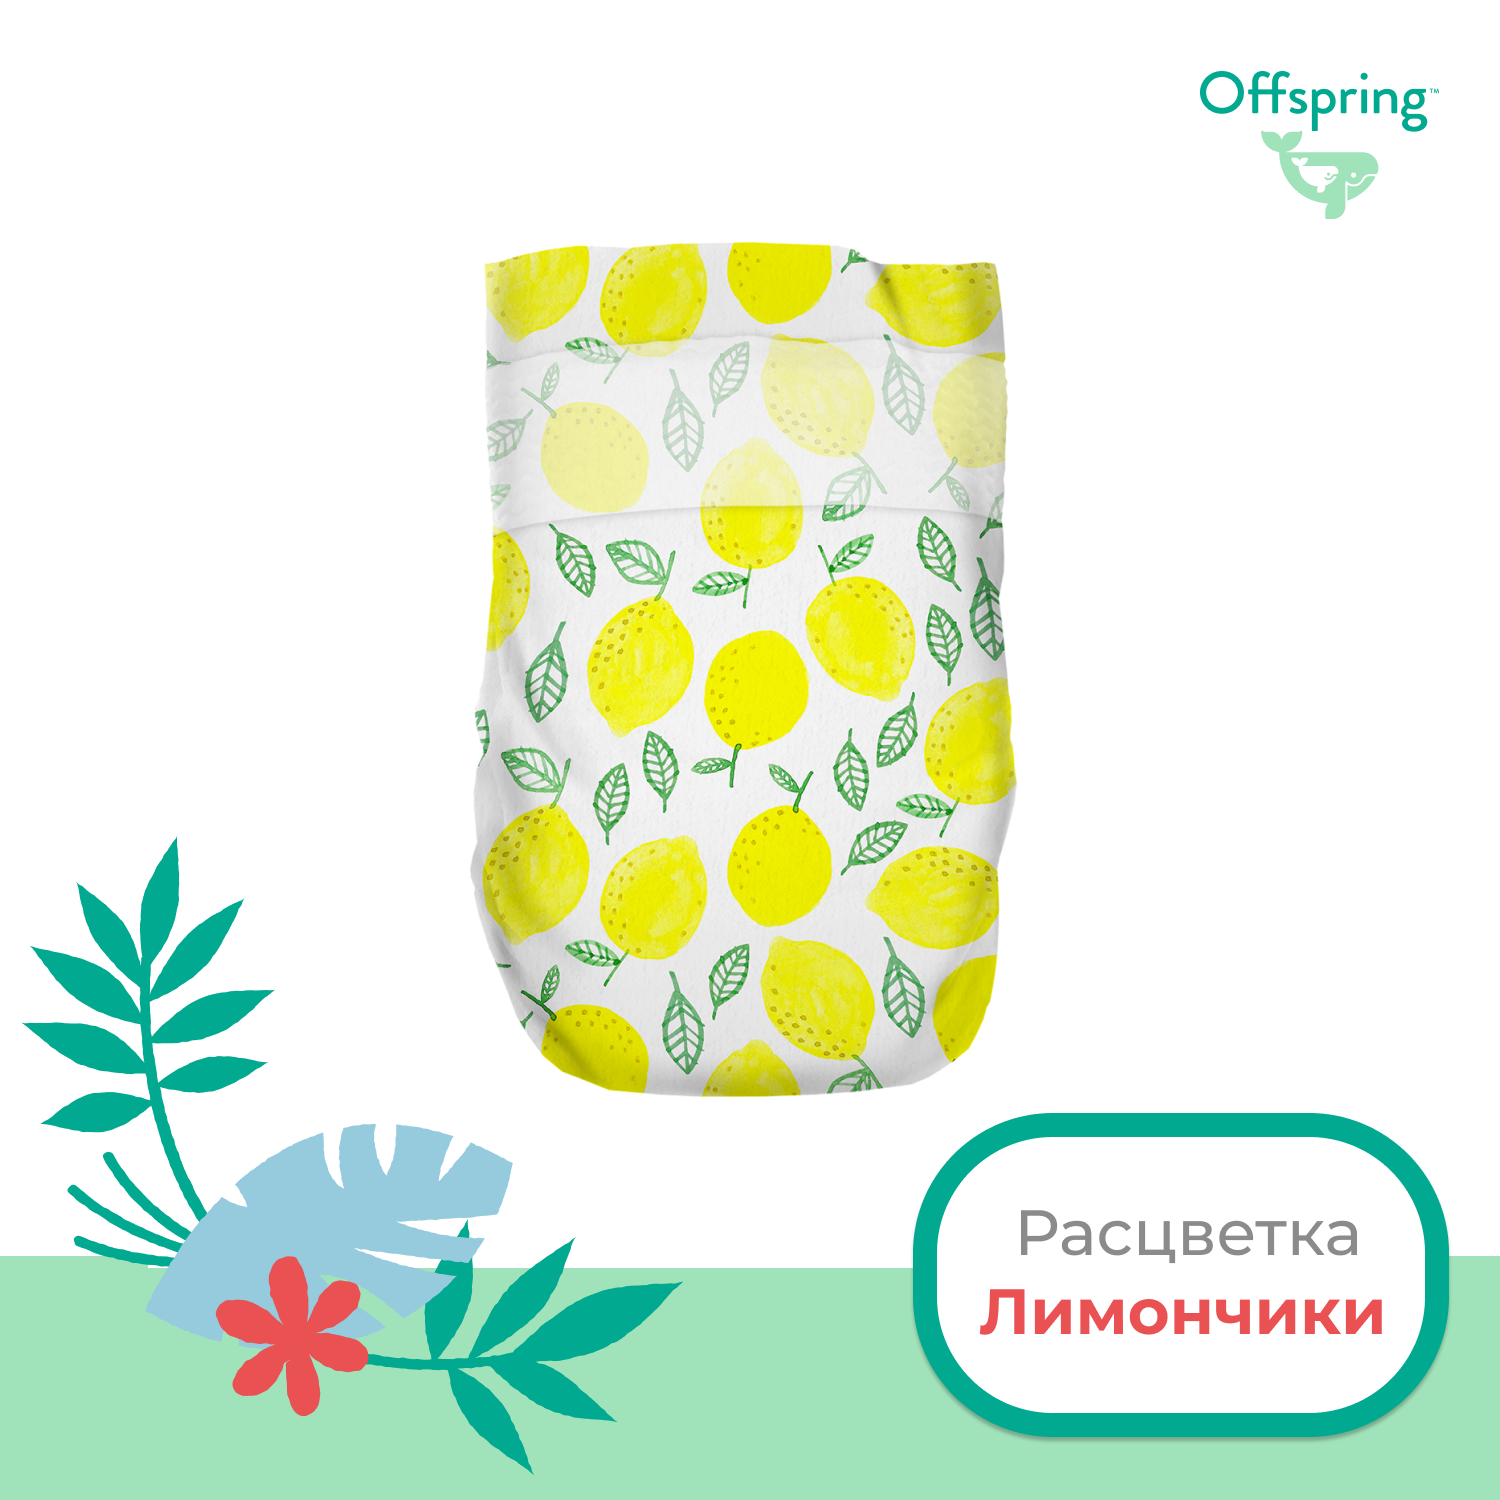 Подгузники Offspring S 3-6 кг 48 шт расцветка Лимоны - фото 2